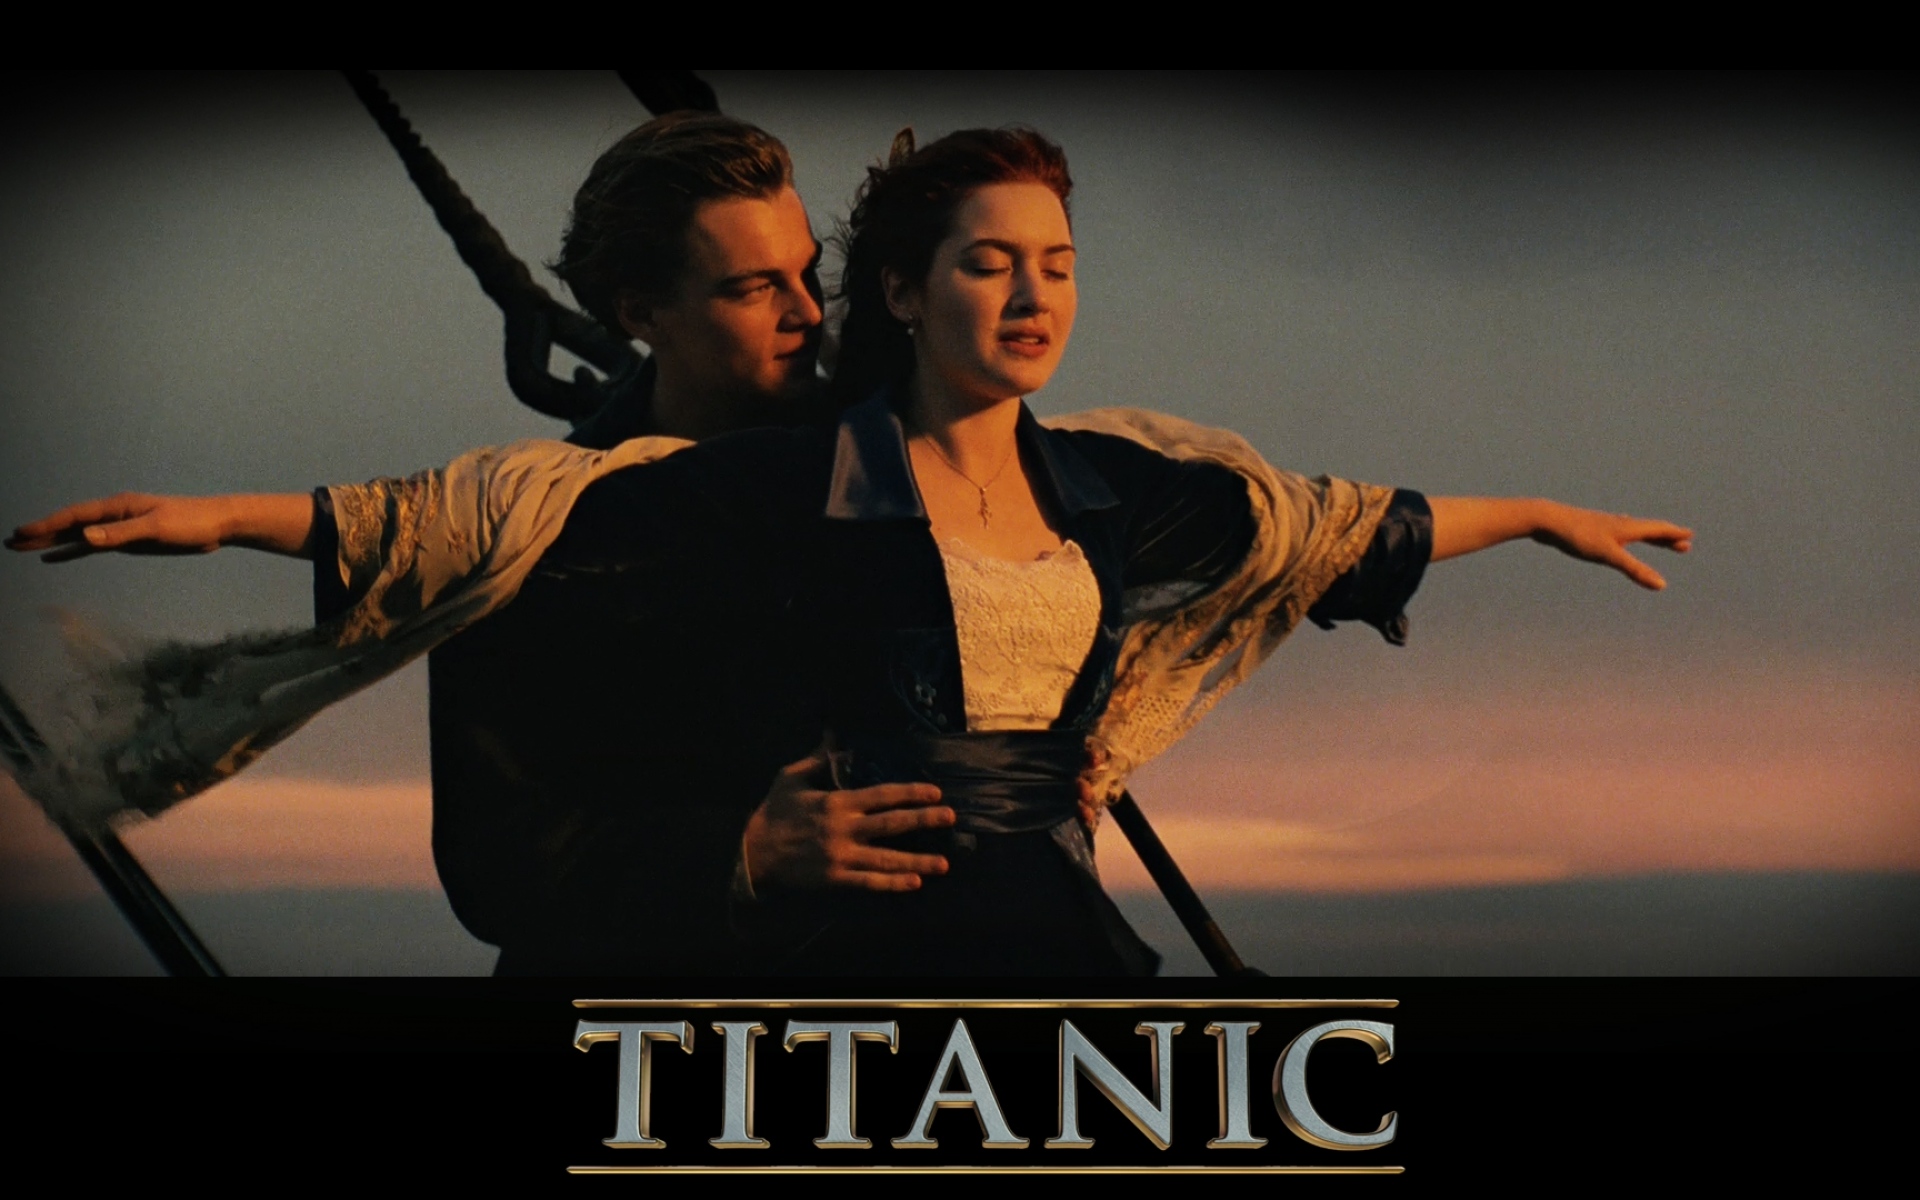 Картинки Титаник, любовь, знаменитая поза, любовники, романтика фото и обои на рабочий стол